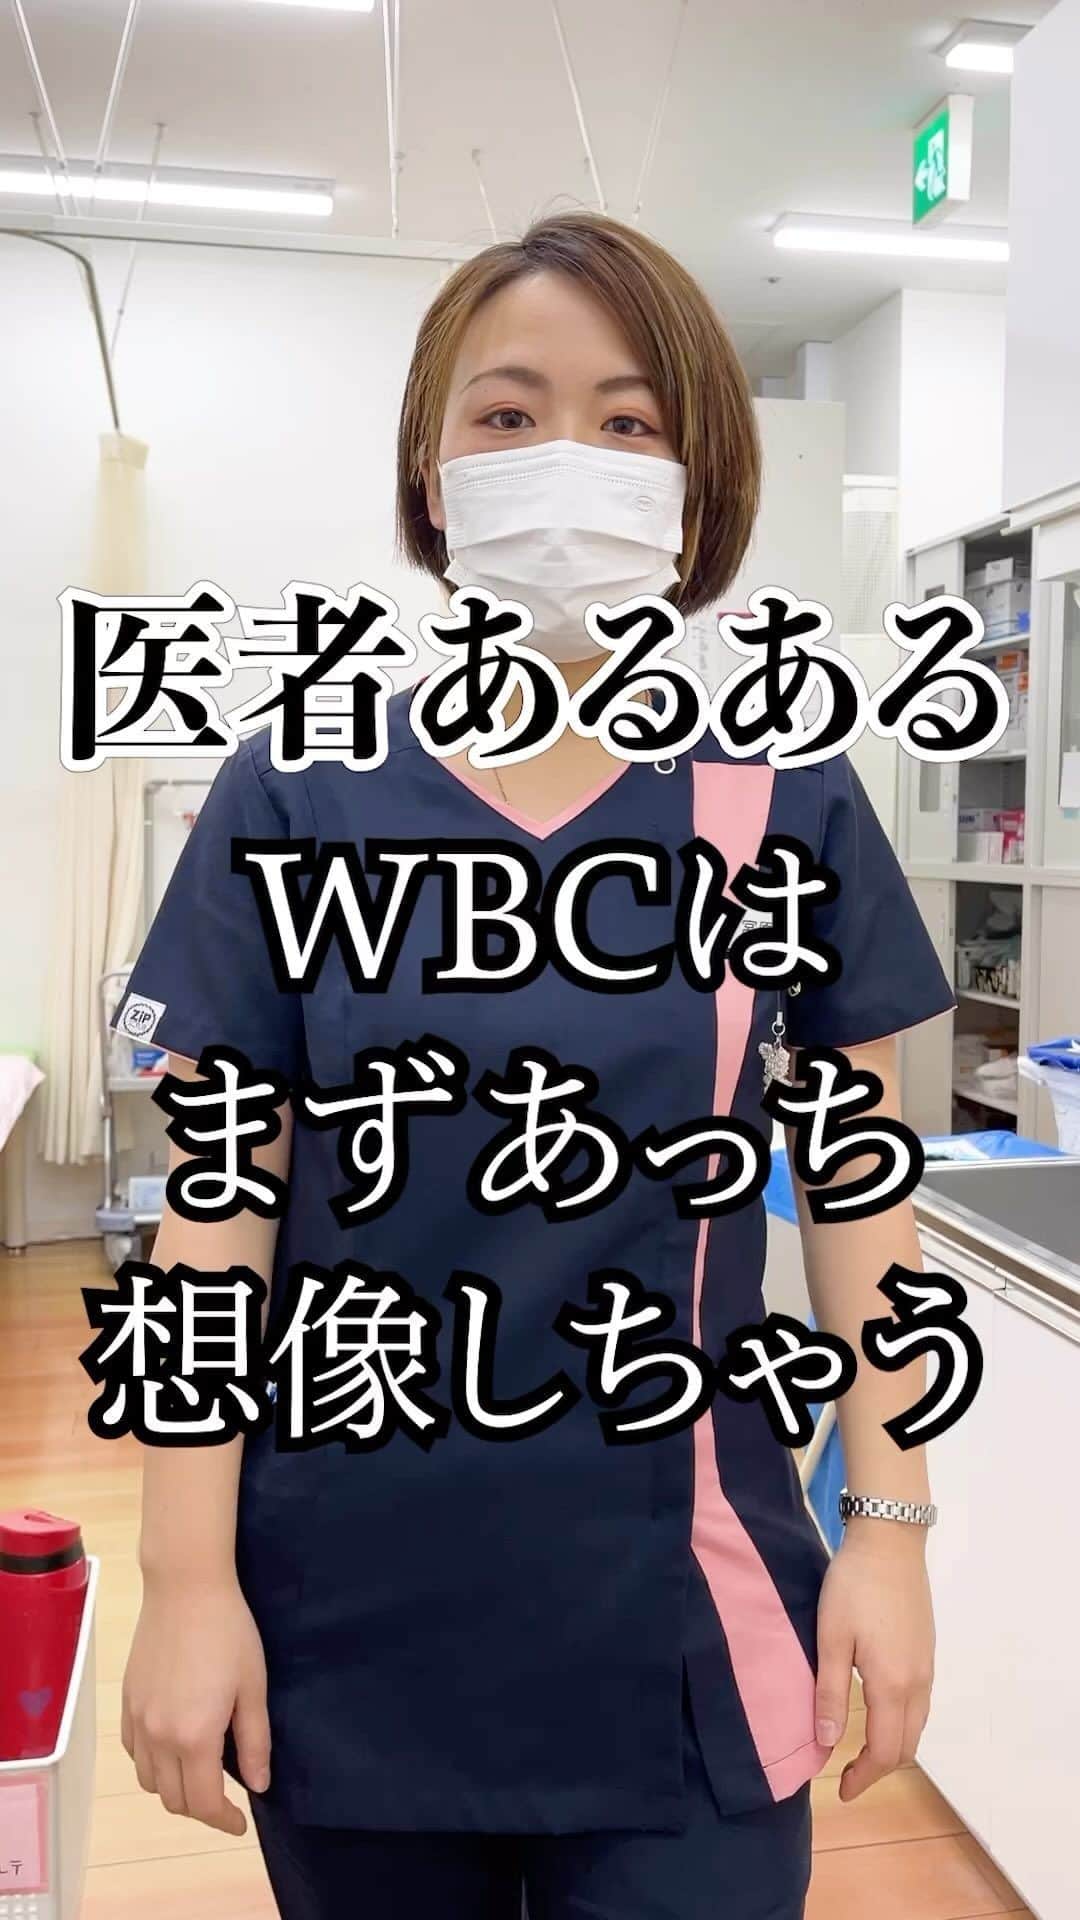 しゅんしゅんクリニックPのインスタグラム：「・ 【医者あるある】 WBCは野球ではなく白血球⚾️  医者看護師あるある、医療従事者あるあるです！WBCといえばWorld Baseball ClassicではなくWhite Blood Cellです！ まず白血球のことを頭に浮かべますね🤔  まぁでも日本代表WBC頑張ってほしいです！！ ベーシュッボール🙌🏻  #医者あるある #WBCの意味が違う #看護師あるある #医療従事者あるある #WBCといったらまず白血球 #野球ではなく白血球 #HRといったら脈拍 #ホームランではない #てかホームランのことHRってまず言わないけど #この場合なっちゃんがおかしなこと言ってる #二刀流と言ったら大谷翔平ではなくしゅんしゅんクリニックP #それは嘘ですすみません #日本代表頑張れ #WBC #大谷翔平 #しゅんしゅんクリニックP」